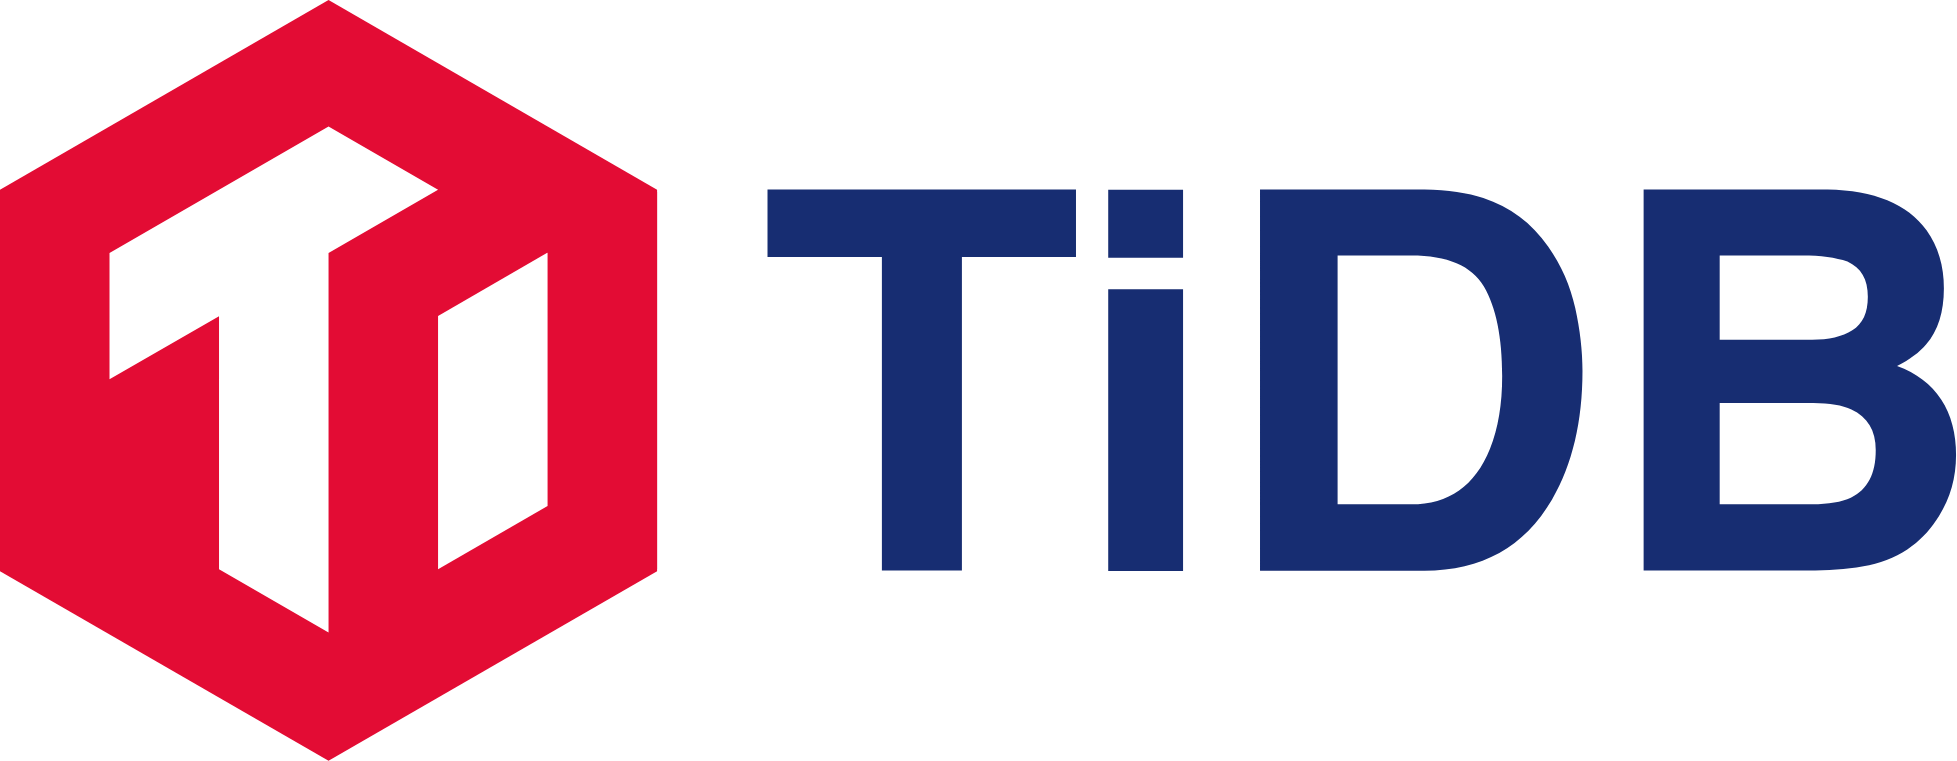 Database of Databases - TiDB